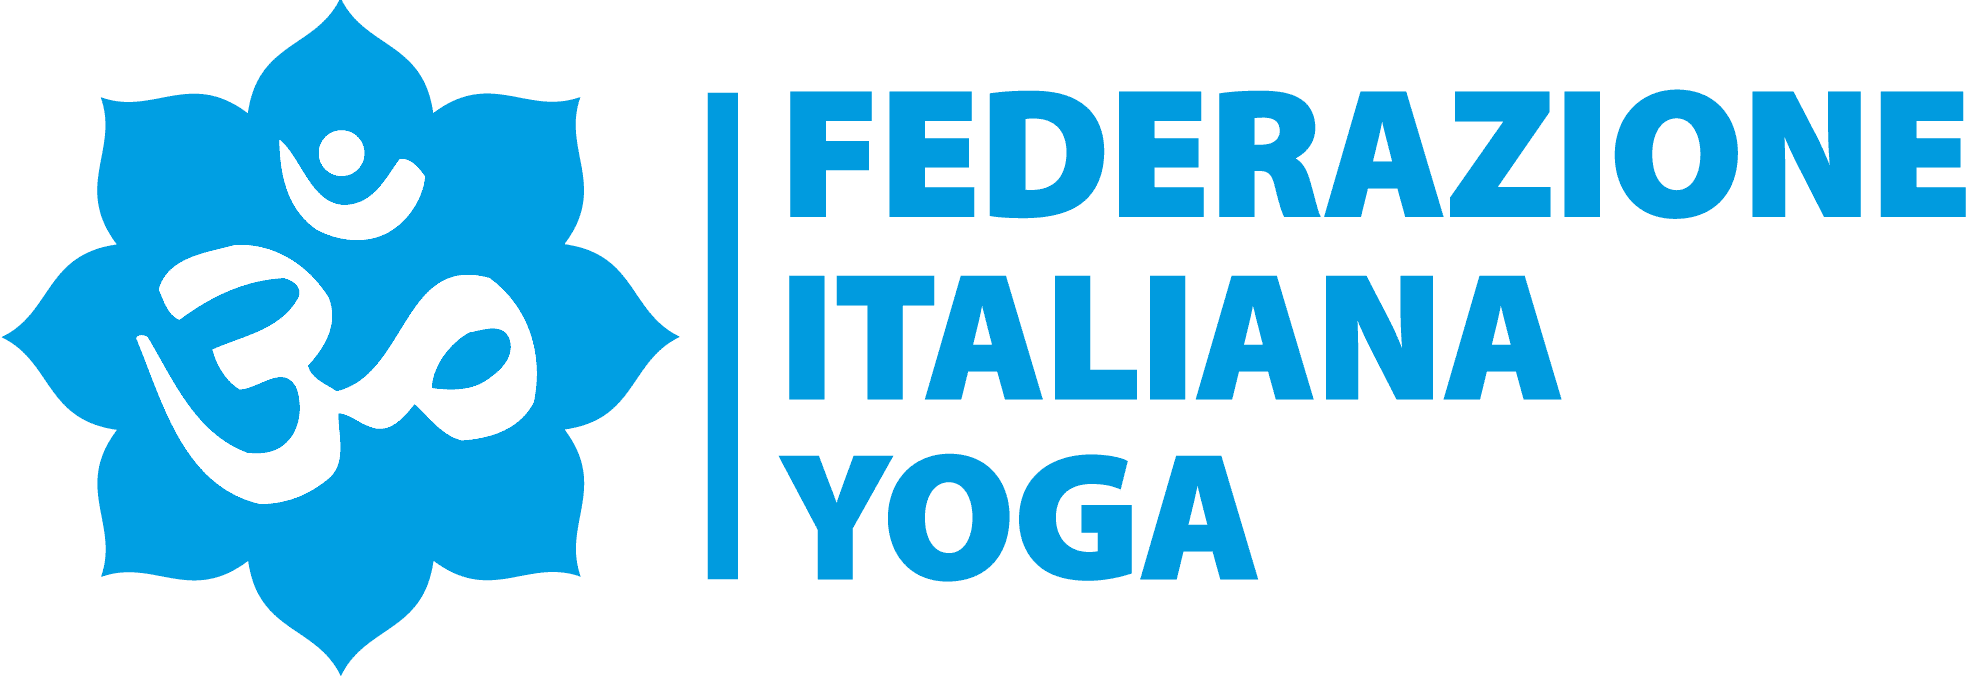 Federazione Italiana Yoga